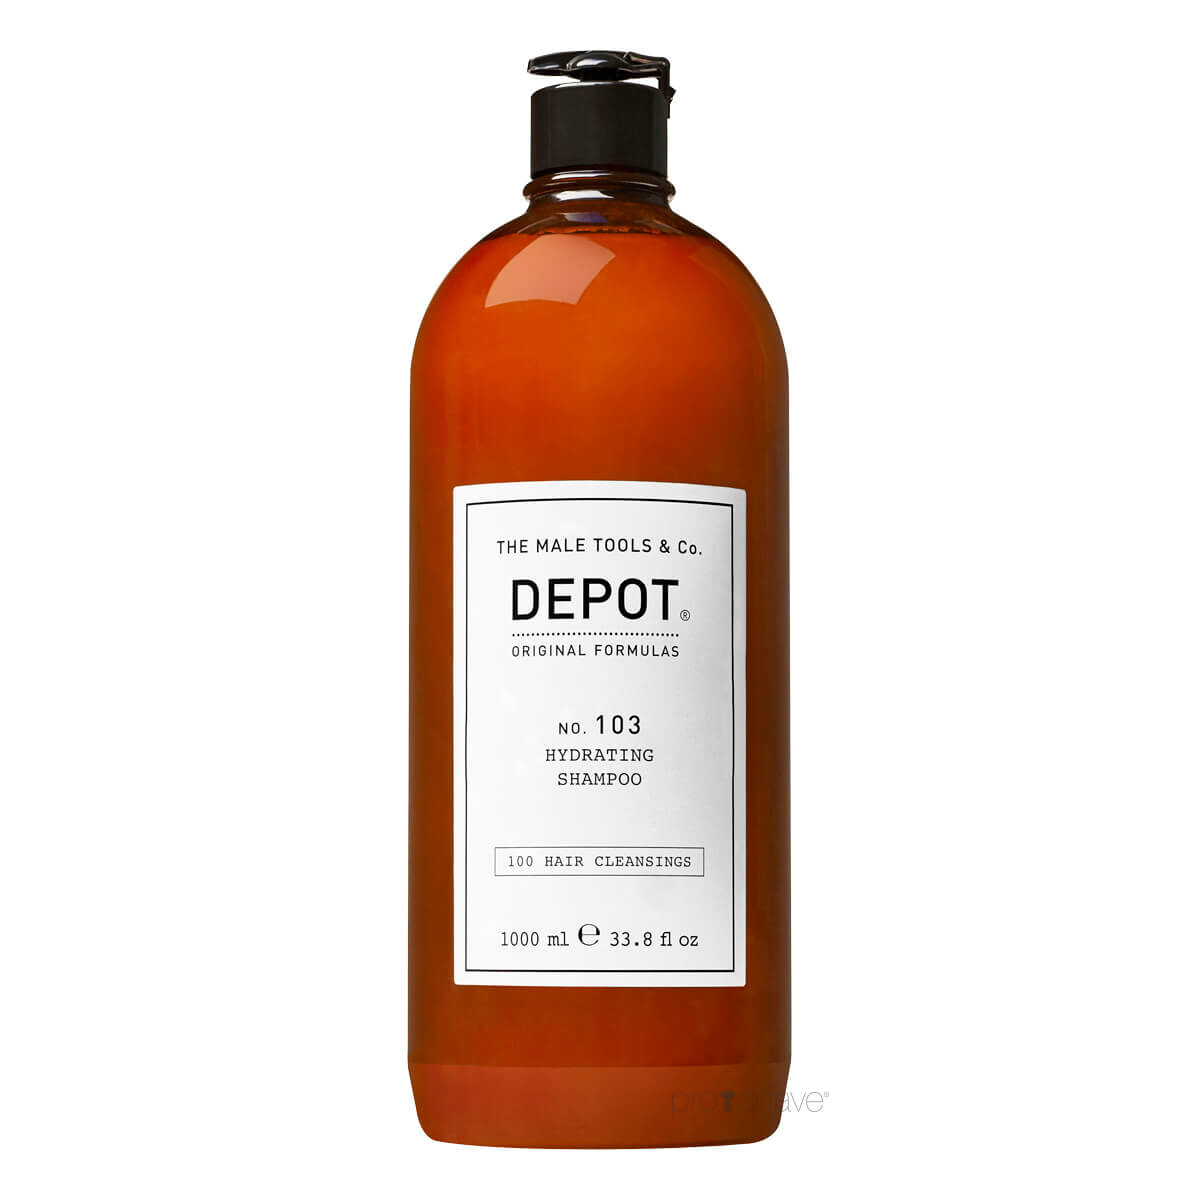 Billede af Depot Hydrating Shampoo, No. 103, 1000 ml.